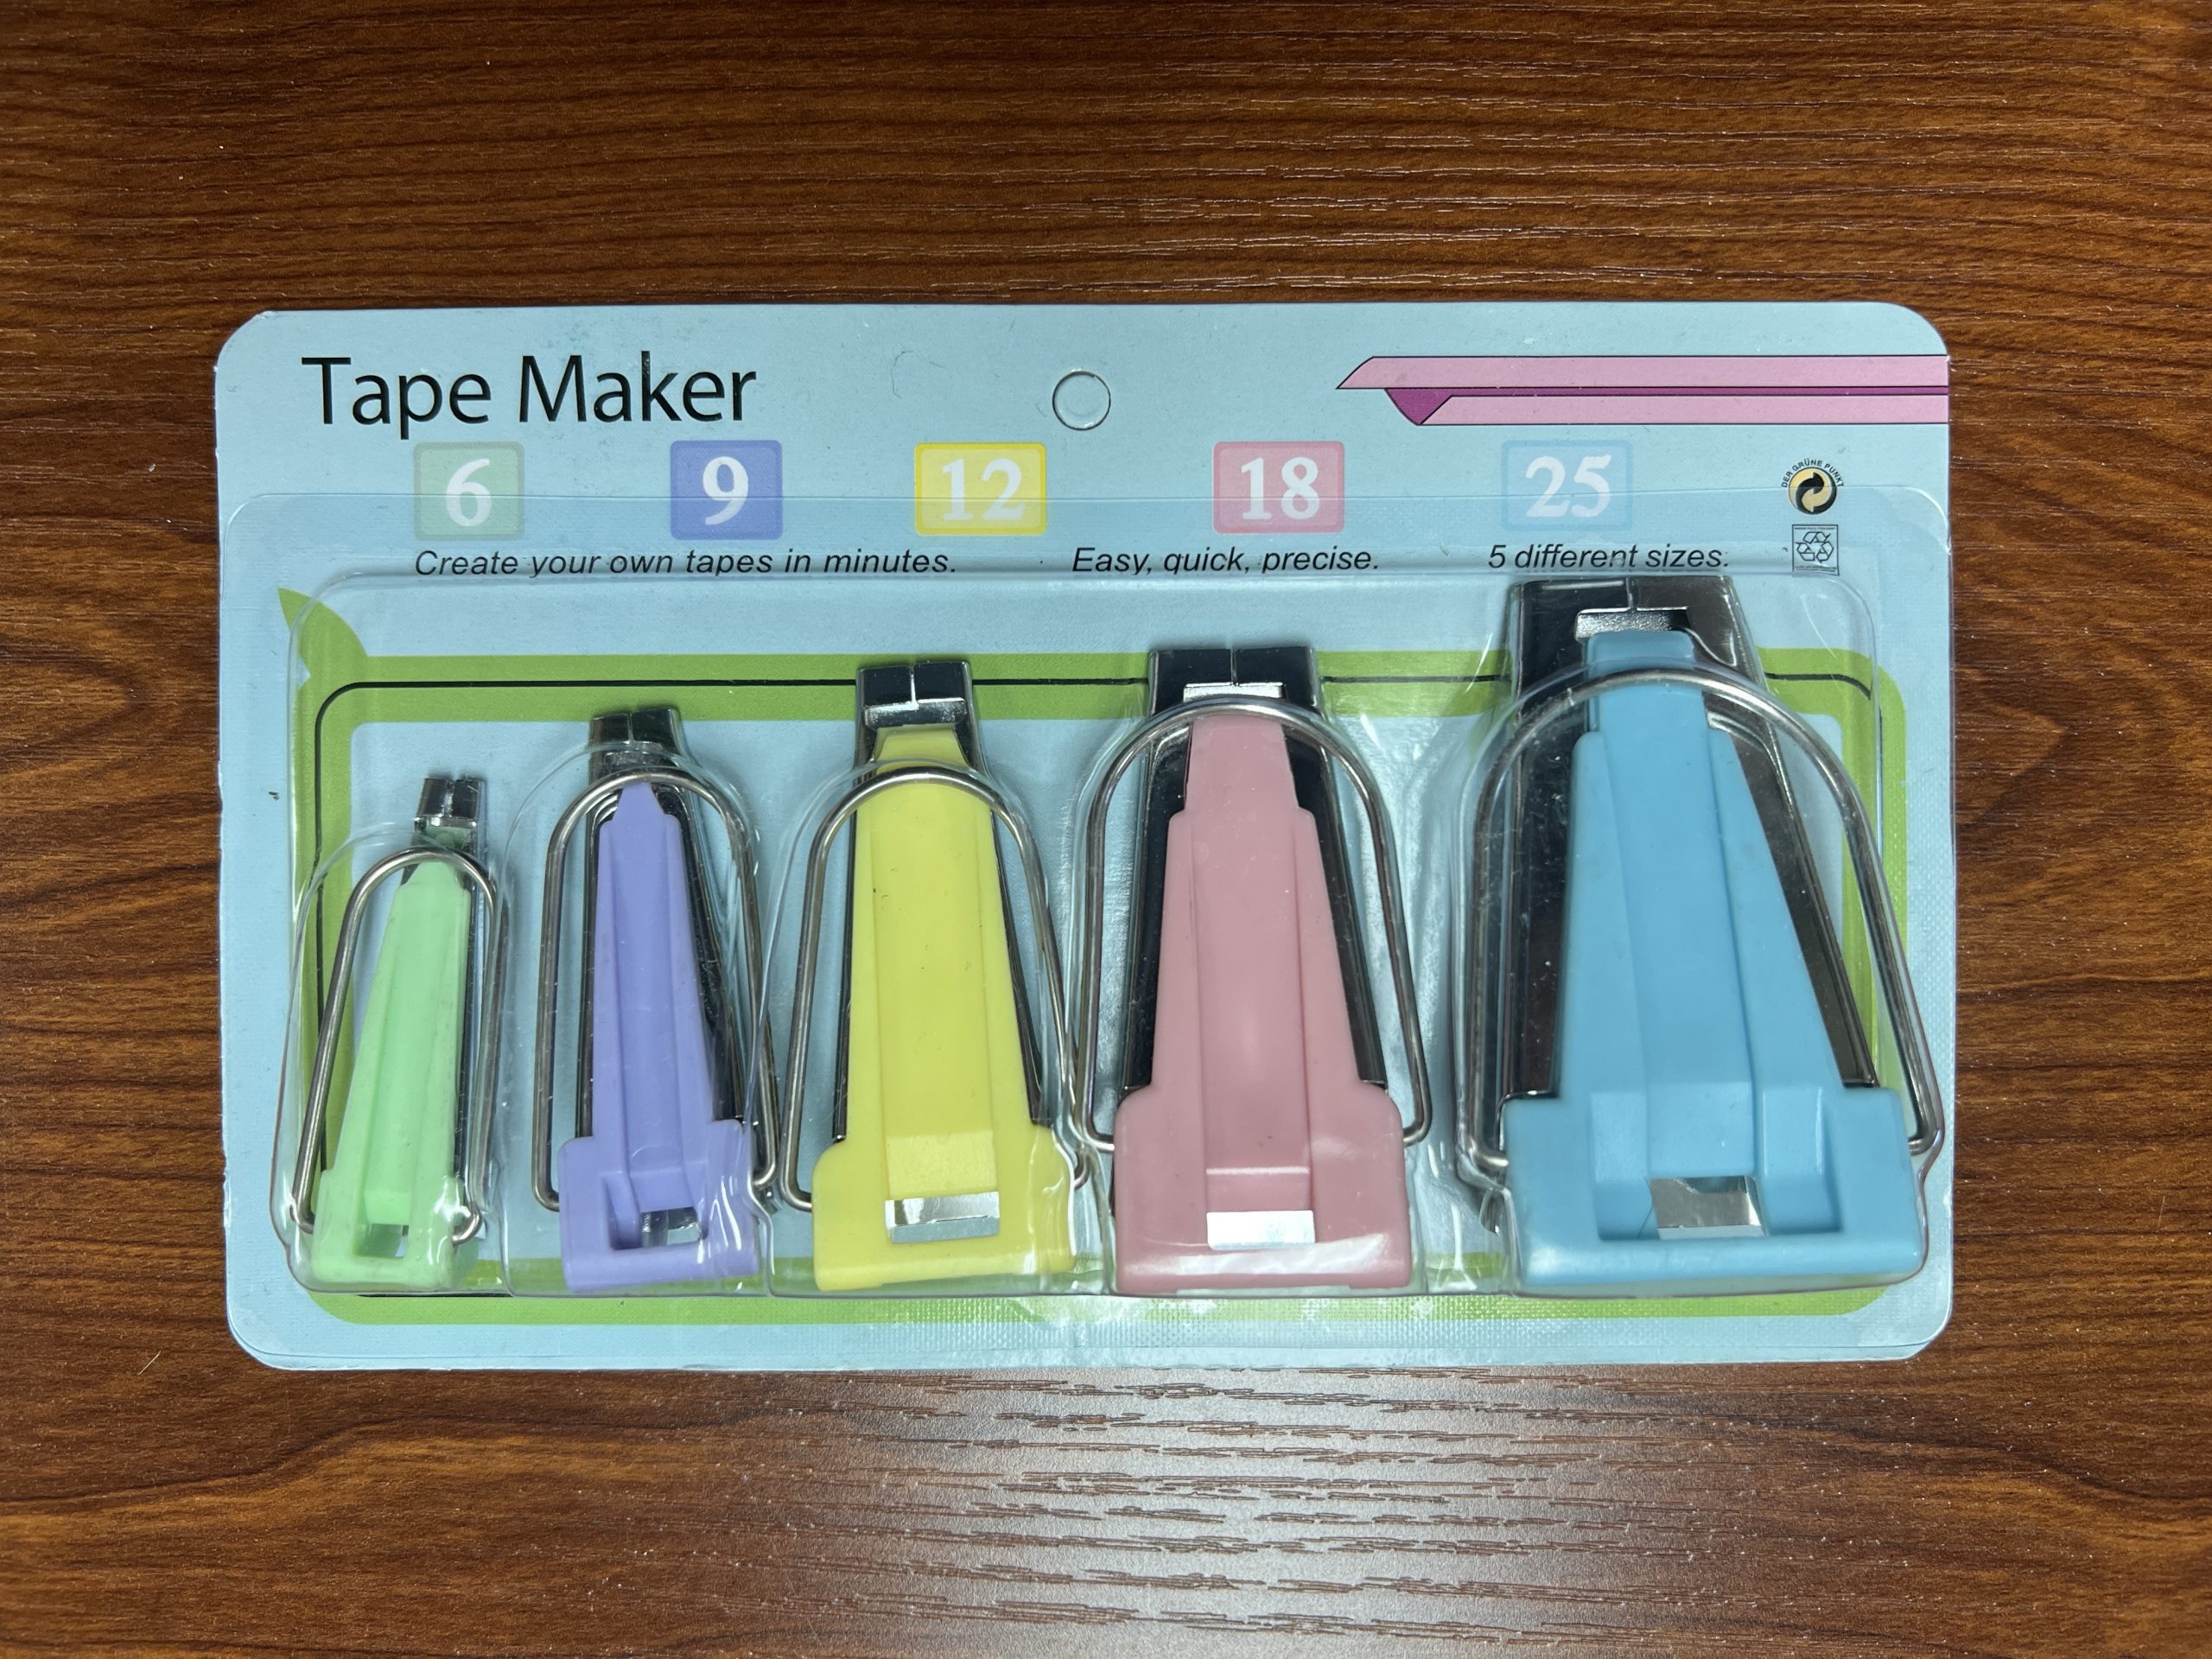 Bias Tape Makers